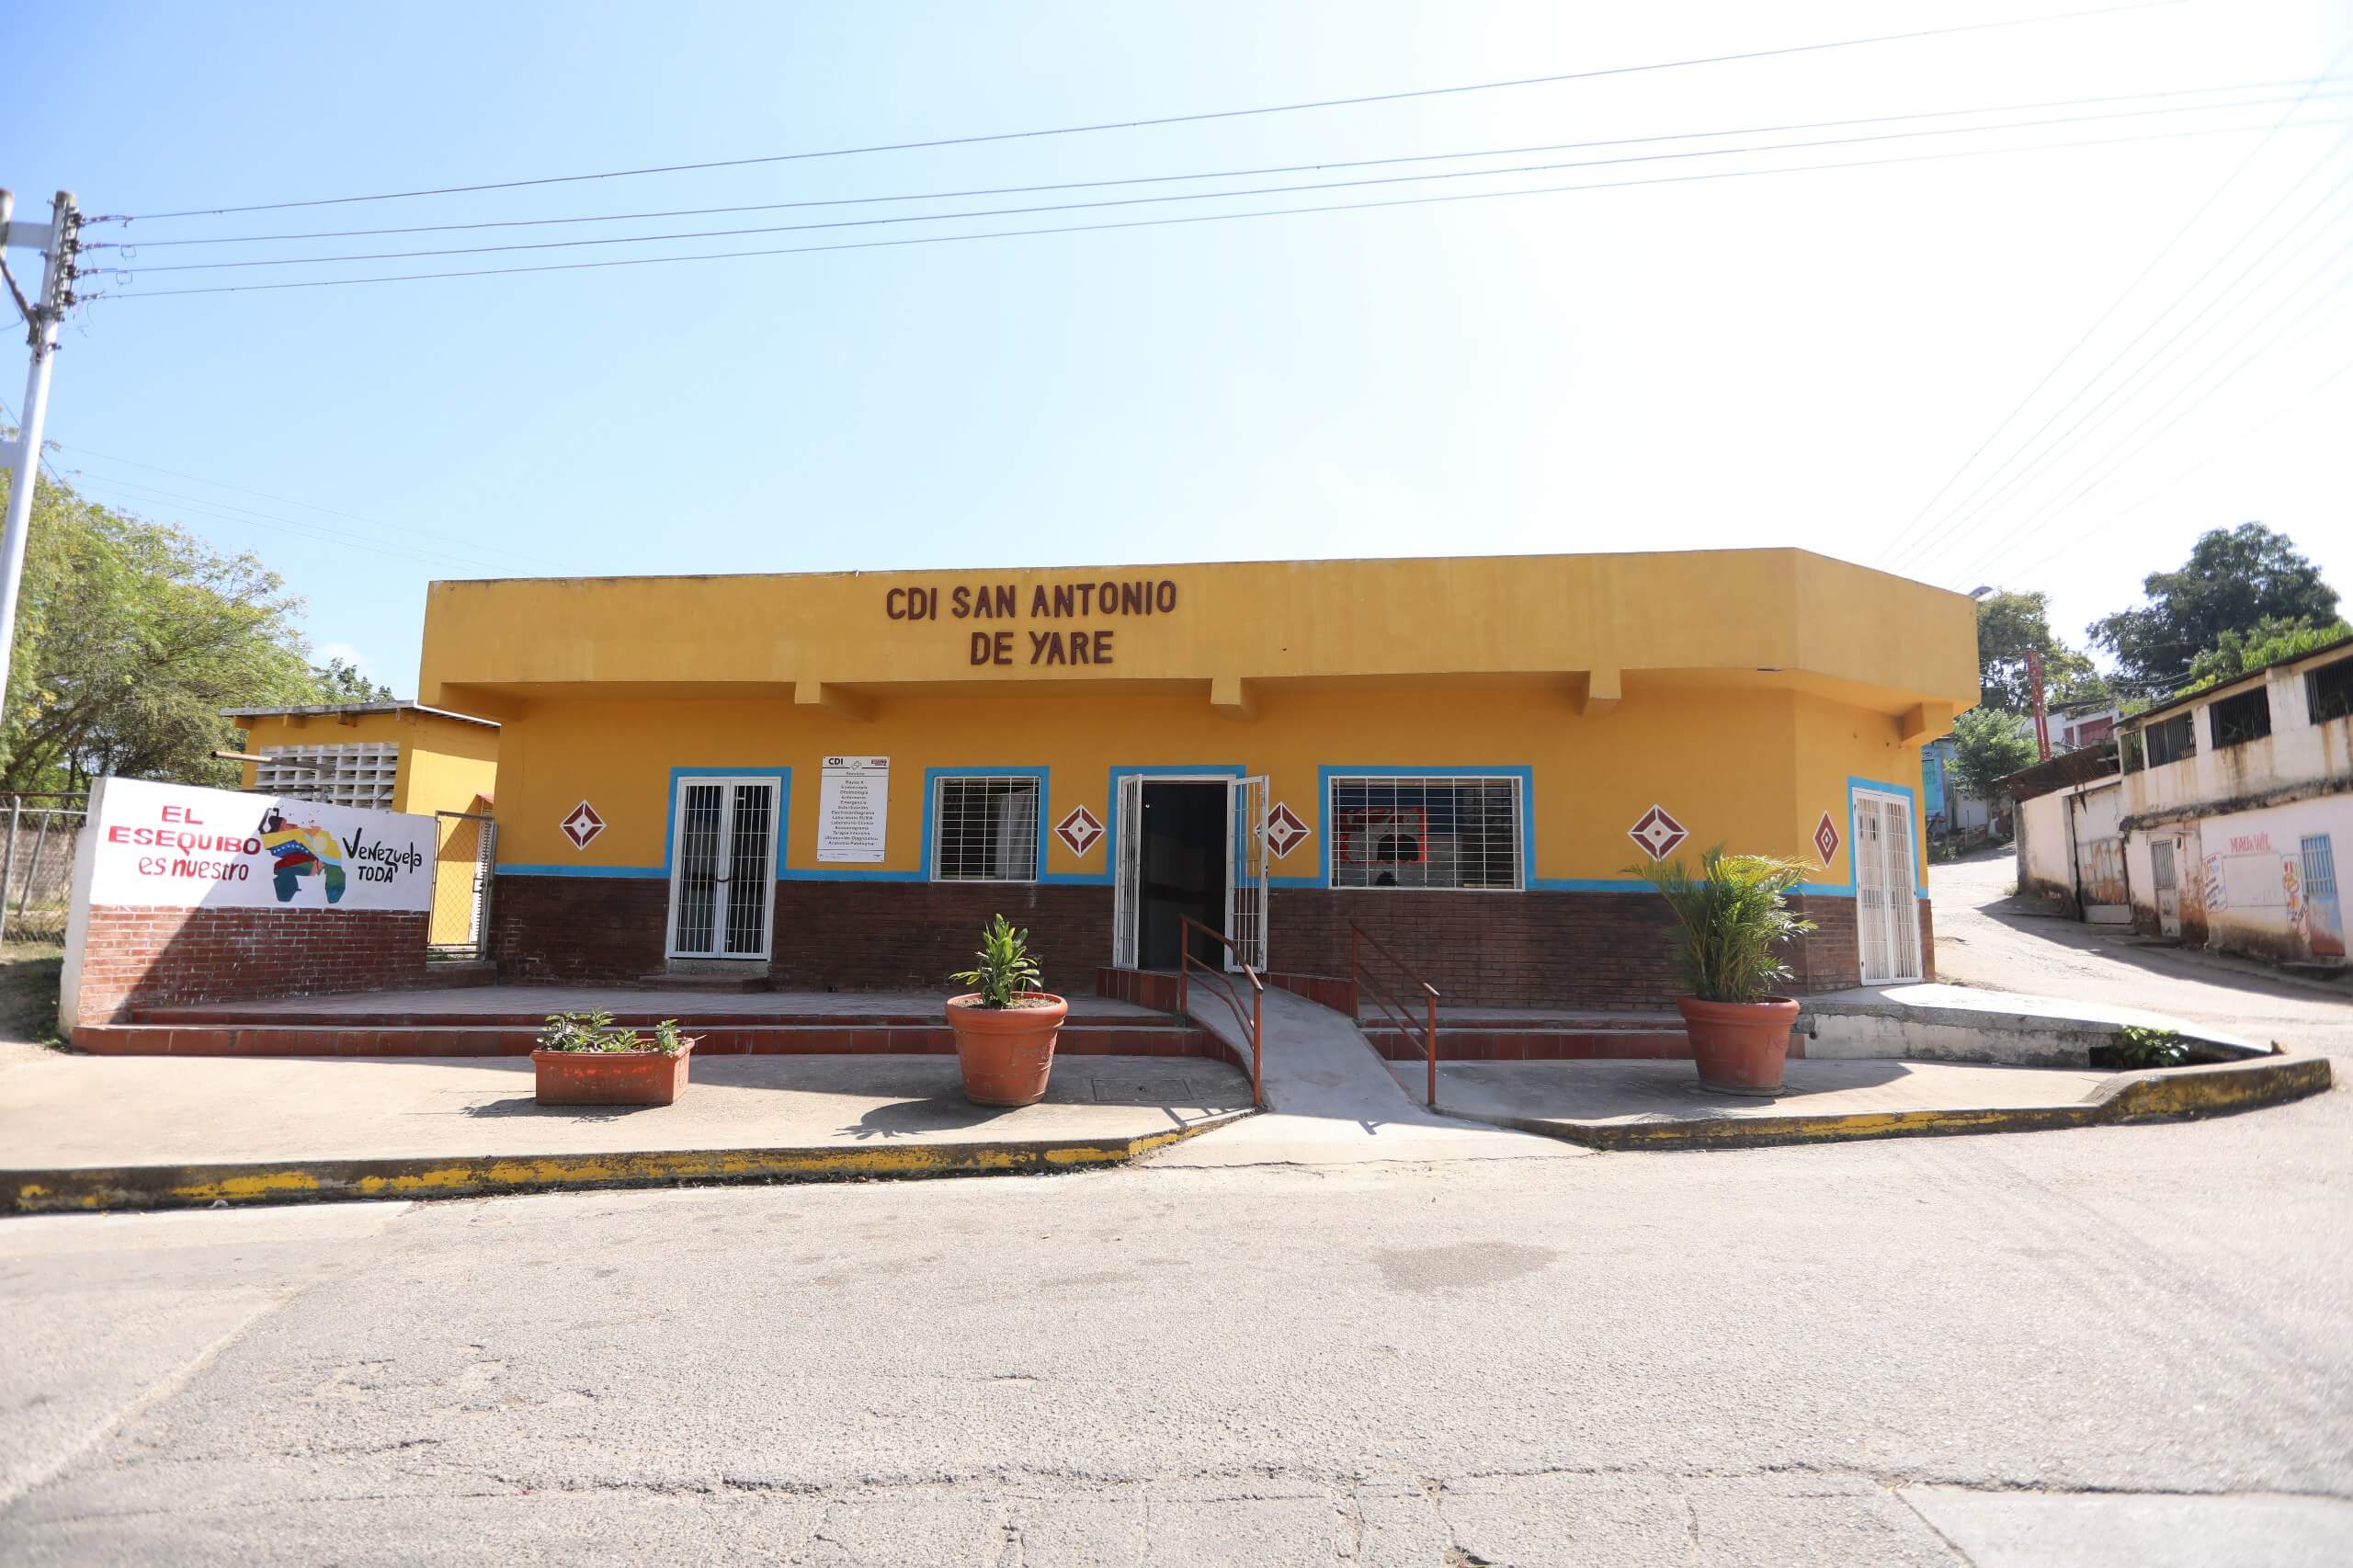 Atención a comunidades: 1×10 del Buen Gobierno rehabilita CDI San Antonio de Yare